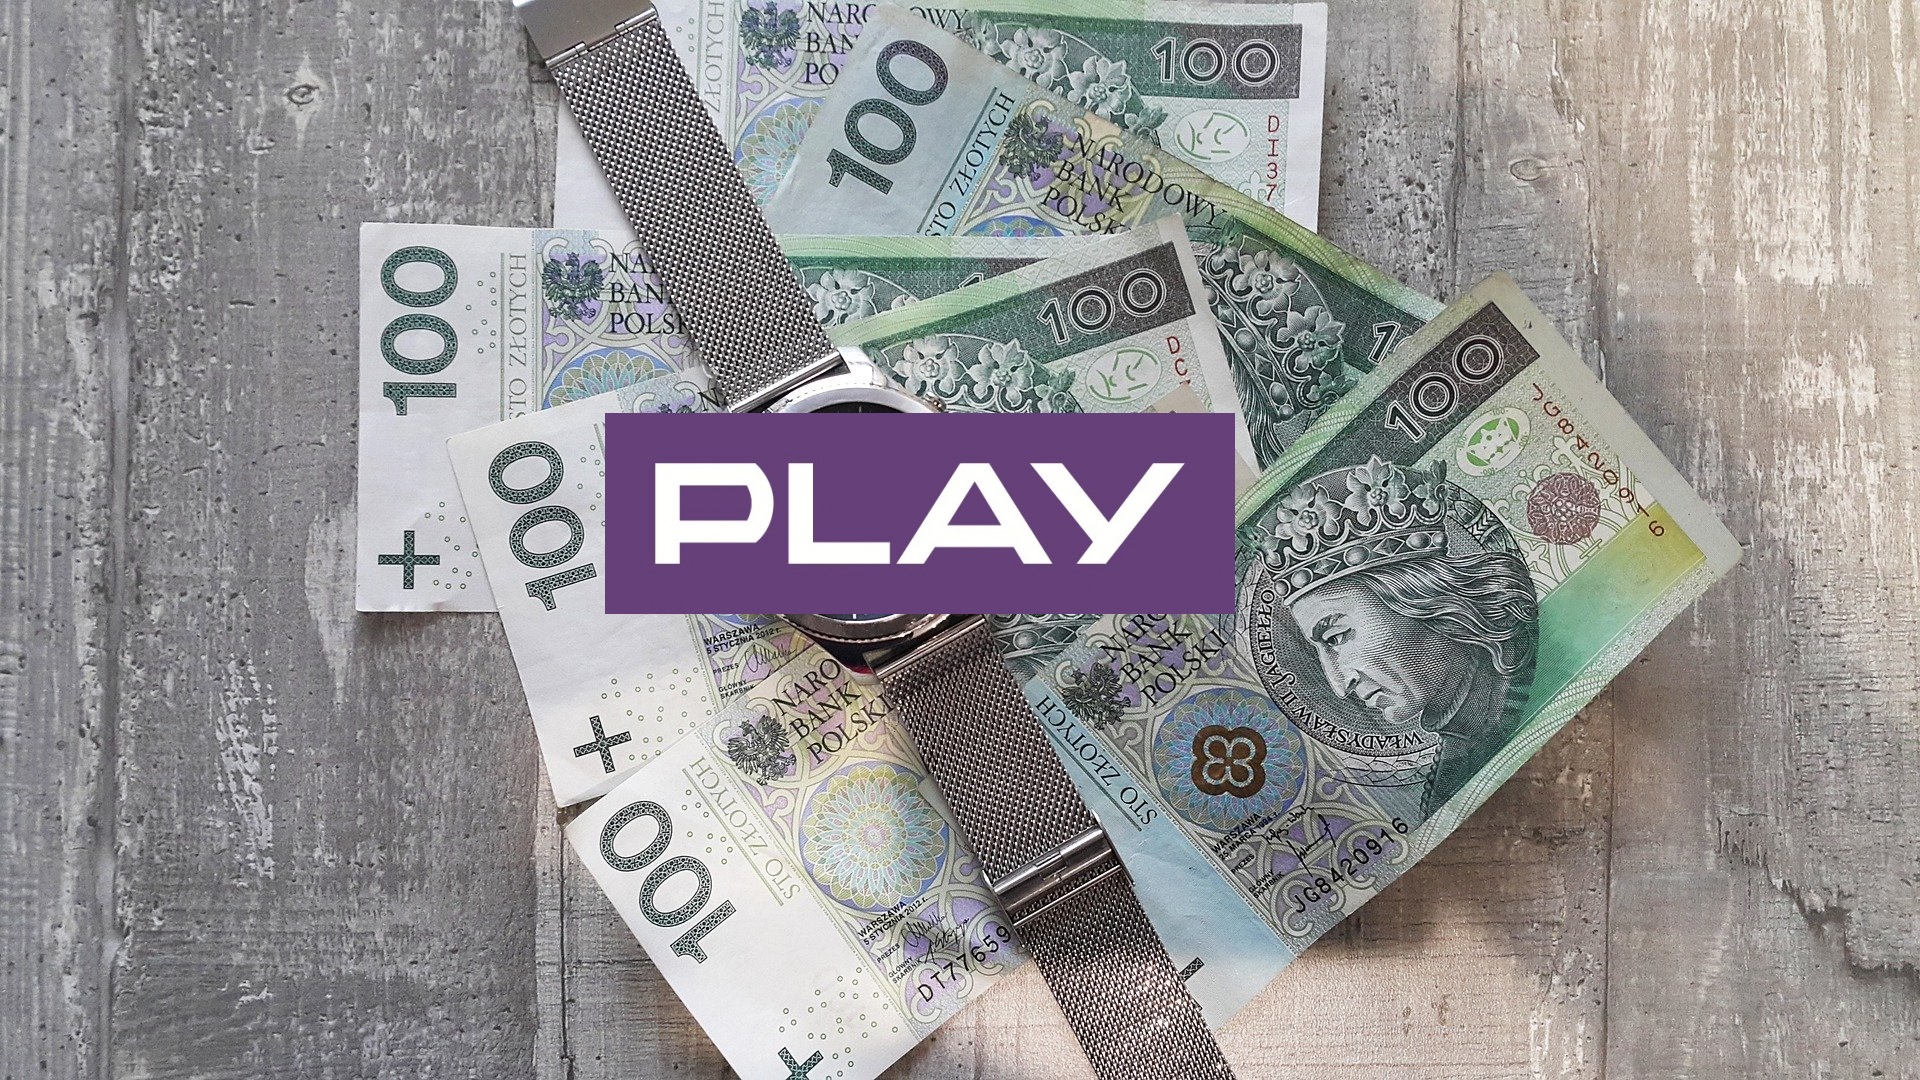 Play logo money pieniądze kasa